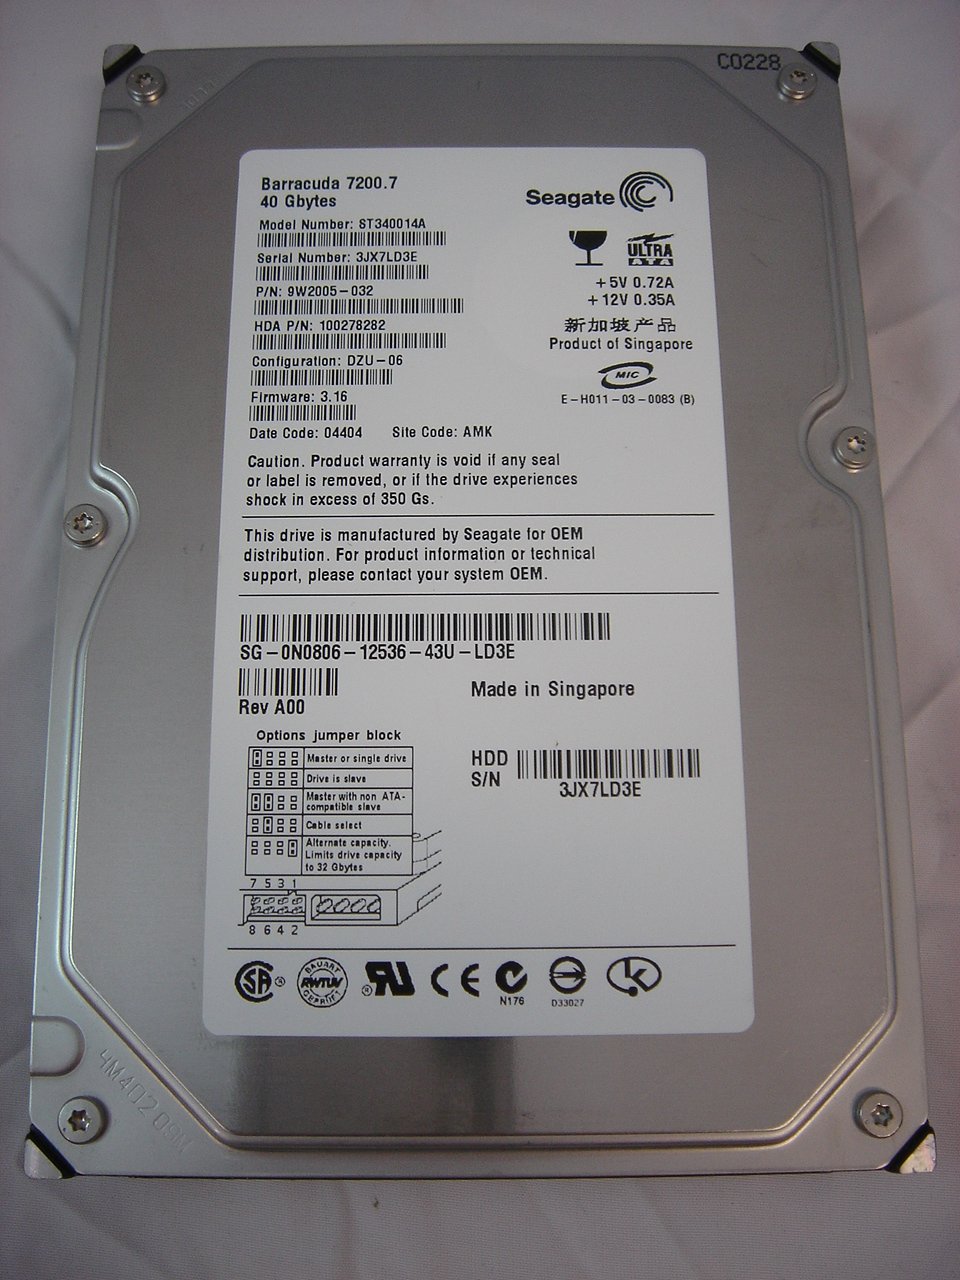 9W2005-032 - Seagate Dell 40GB IDE 7200rpm 3.5in HDD - Refurbished